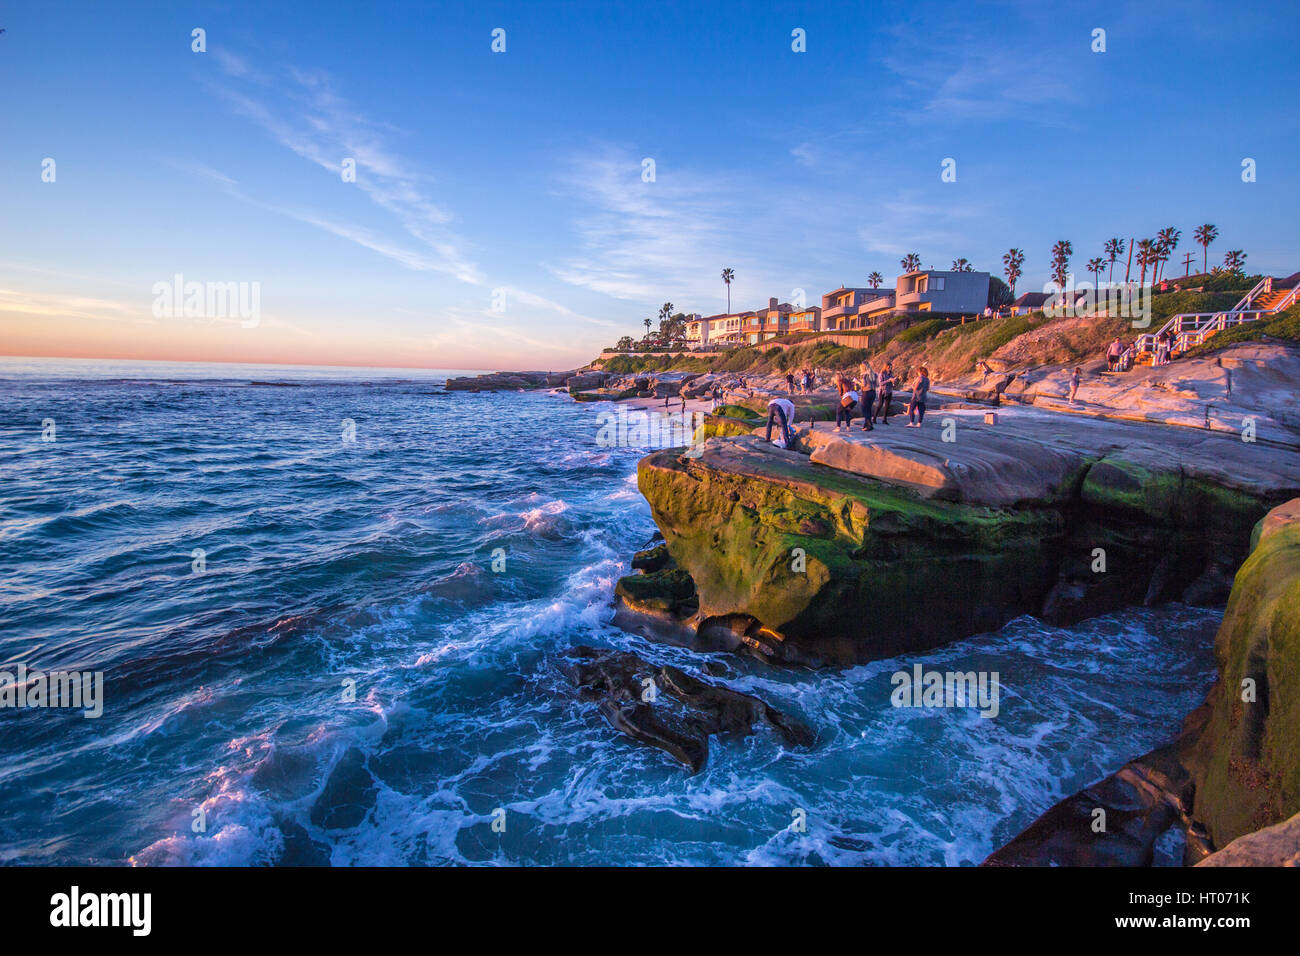 San Diego, wo Sie Surfen den Pazifischen Ozean genießen können. Tolles Wetter erstaunlichste & freundliche Menschen. Stockfoto